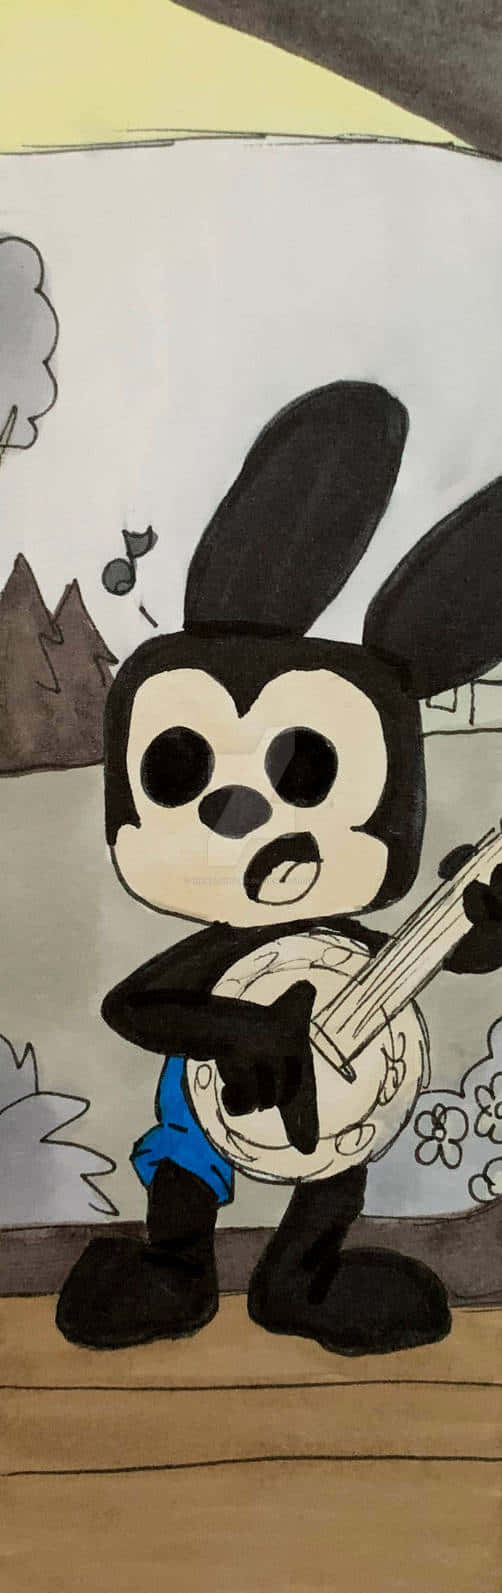 Oswald Playing Banjo Artwork Wallpaper